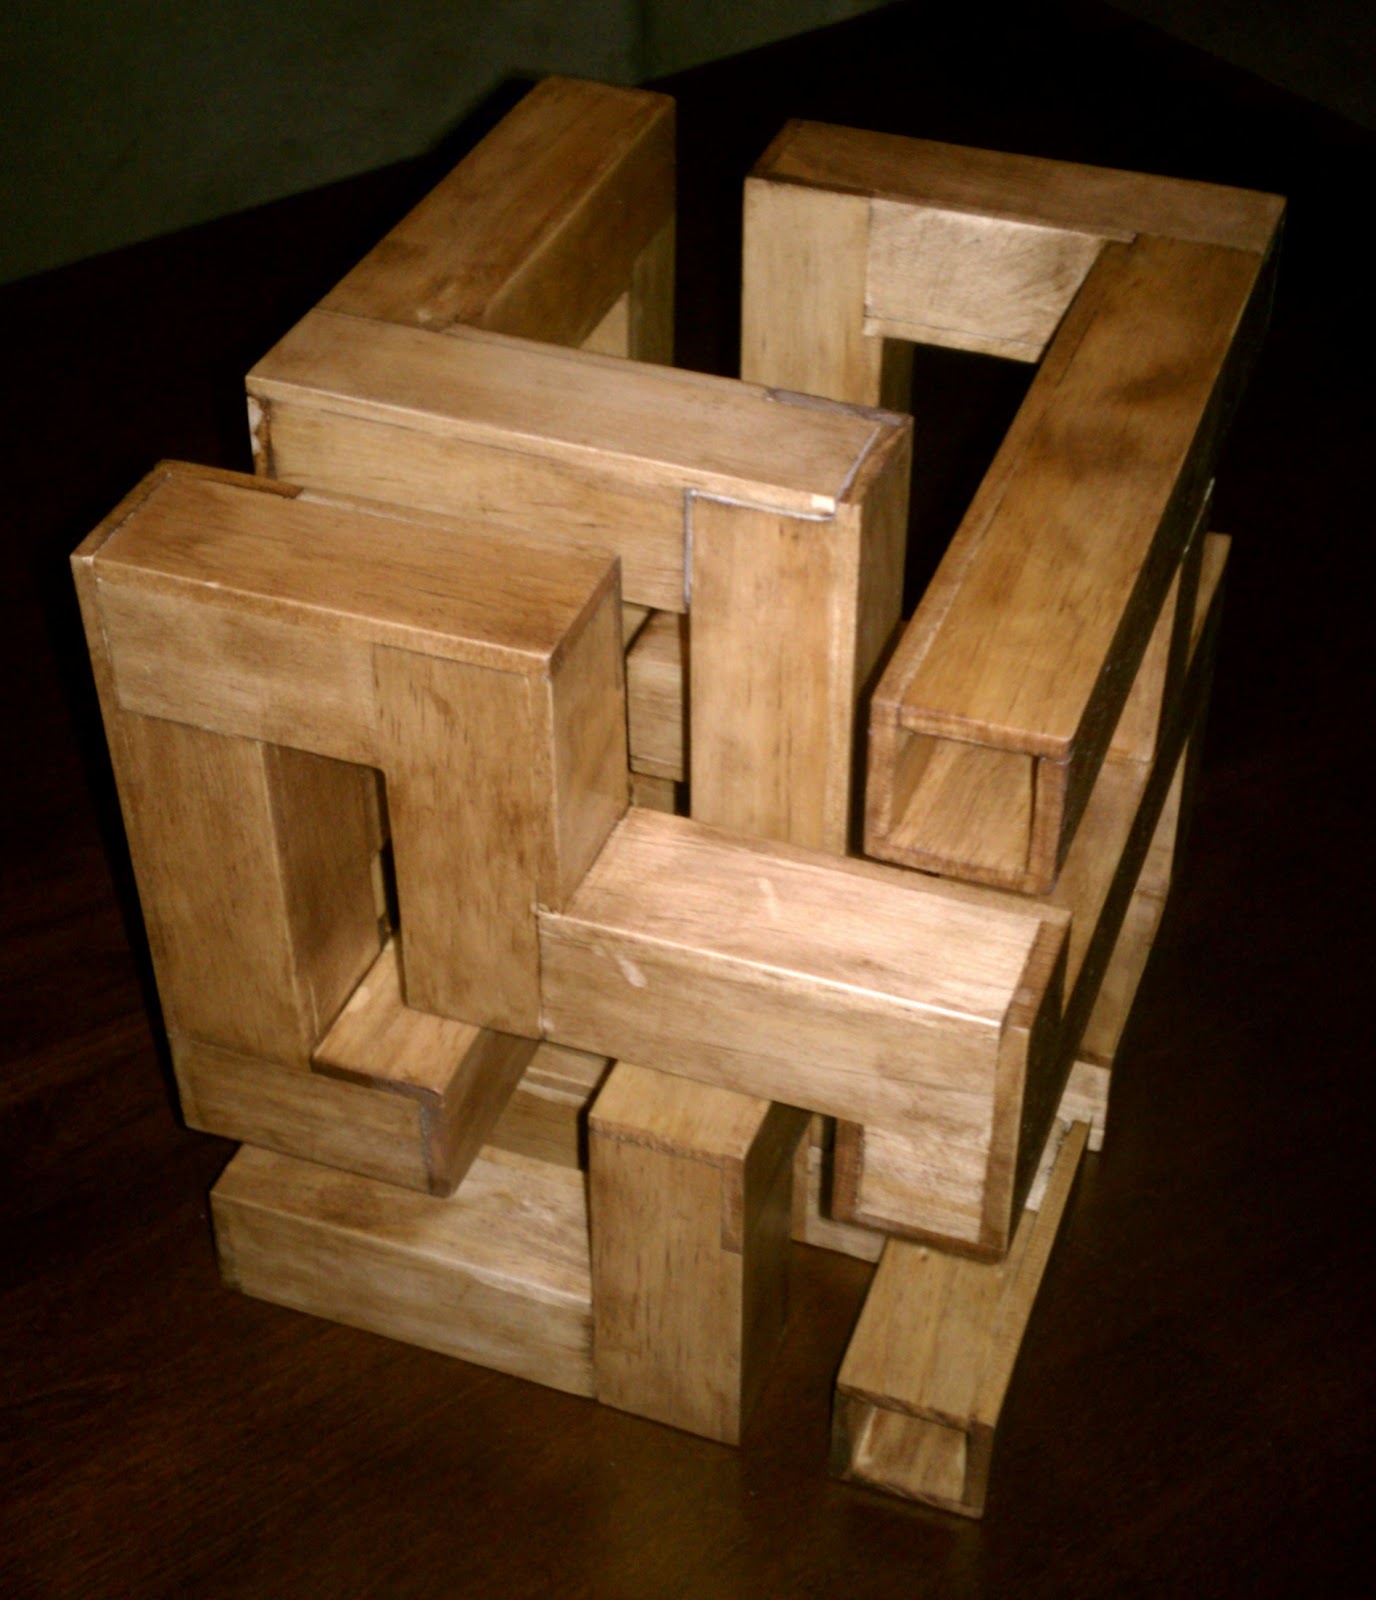 Robot Dialogs: Wooden Puzzle Box 2 (Part 2 of 2)